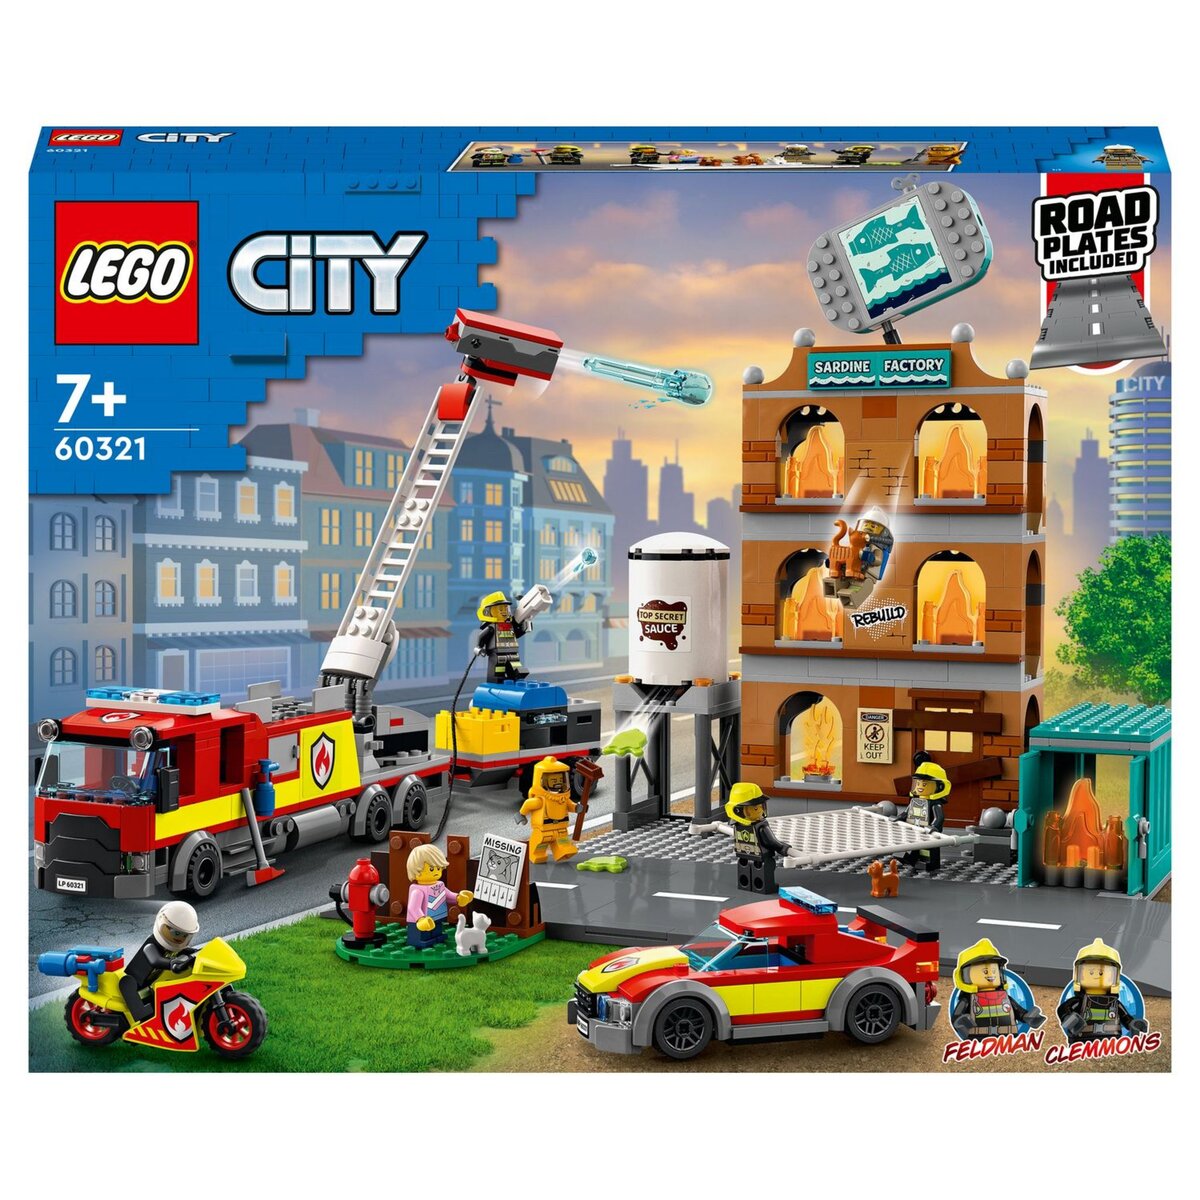 LEGO City 60282 L’unité de commandement des pompiers avec caserne et camion  de pompiers 